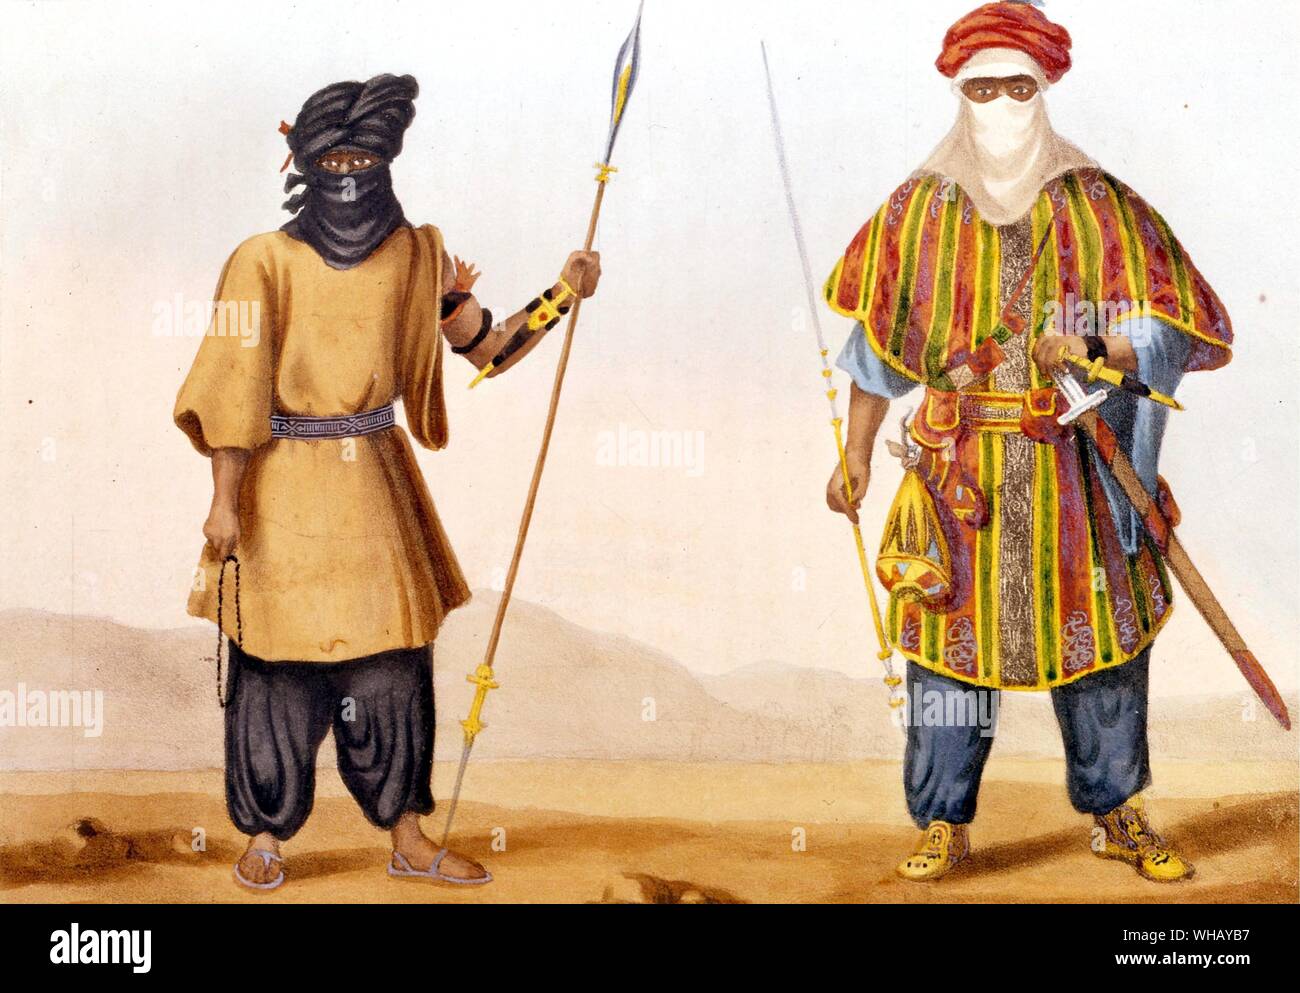 Los tuaregs. Los Tuareg Touareg (a veces escrito en francés o en inglés Twareg) son una etnia bereber o nación. Tuareg es un nombre que fue aplicado a ellos por los primeros exploradores e historiadores, pero ellos se llaman a sí mismos diversamente, kel tamasheq, Kel Tamajaq (altavoces de Tamasheq), Imouhar, Imuhagh, Imazaghan o Imashaghen (libre). El pueblo Tuareg también se identifican con el concepto Tamust, 'La Nación'. Los Tuareg hoy se encuentran principalmente en África occidental, pero, como muchos en el norte de África, una vez fueron nómadas durante todo el Sáhara. La aventura africana - una historia de África. Foto de stock